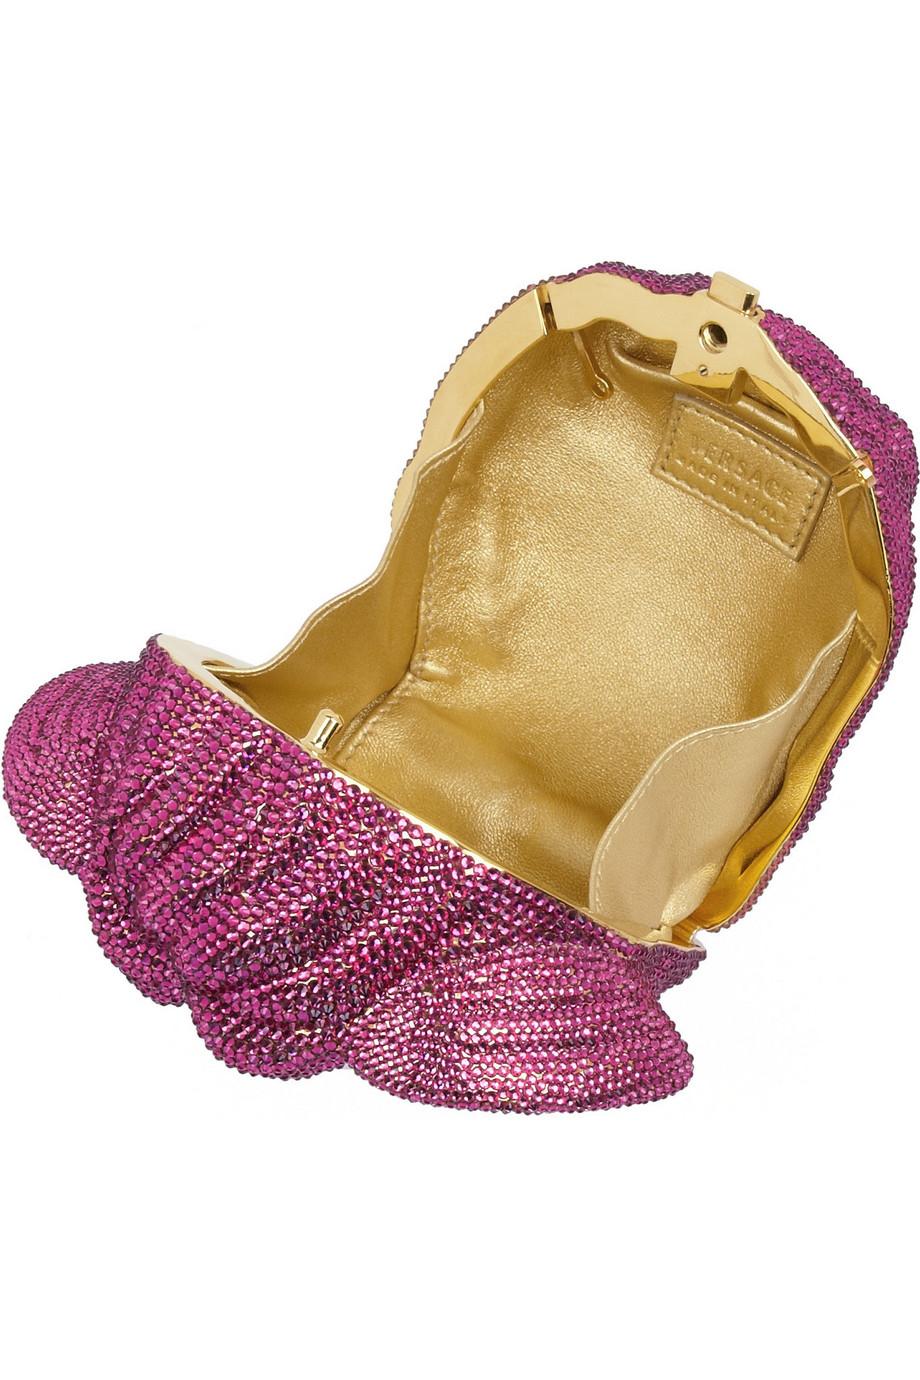 versace pink clutch